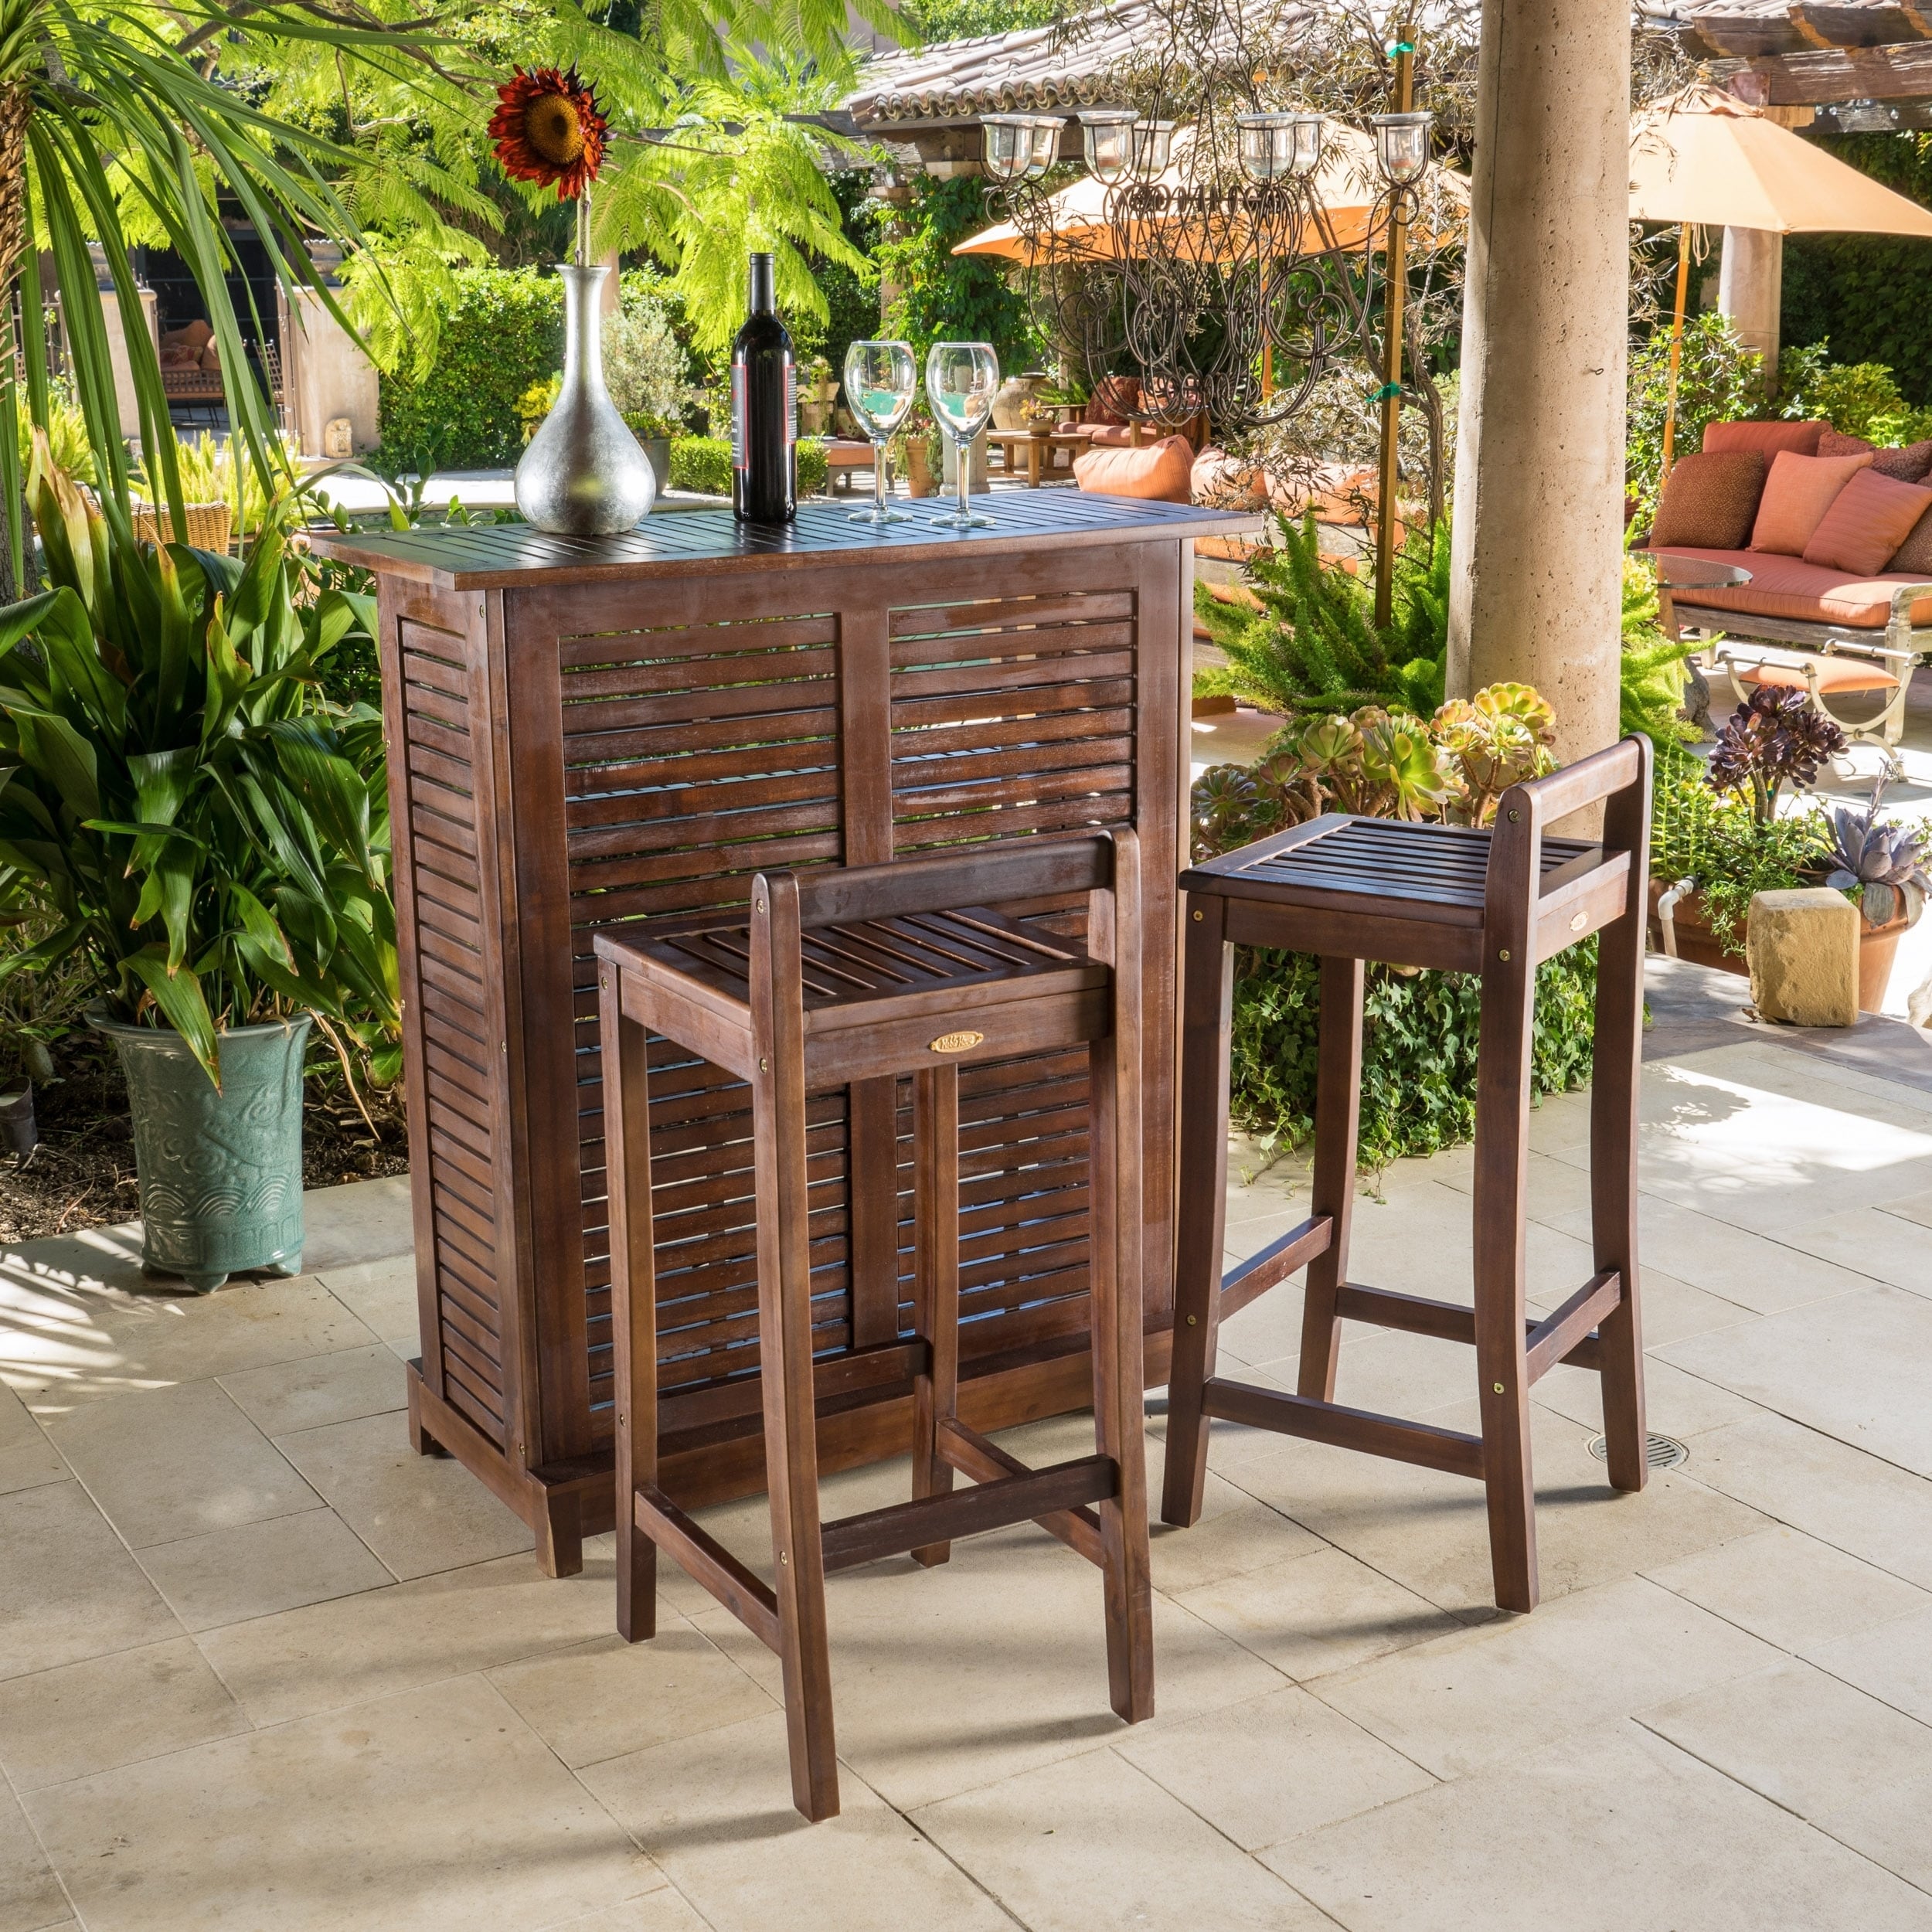 Garden Oasis Bar Sets : Outdoor Living Home Decor Outdoor Furniture ...